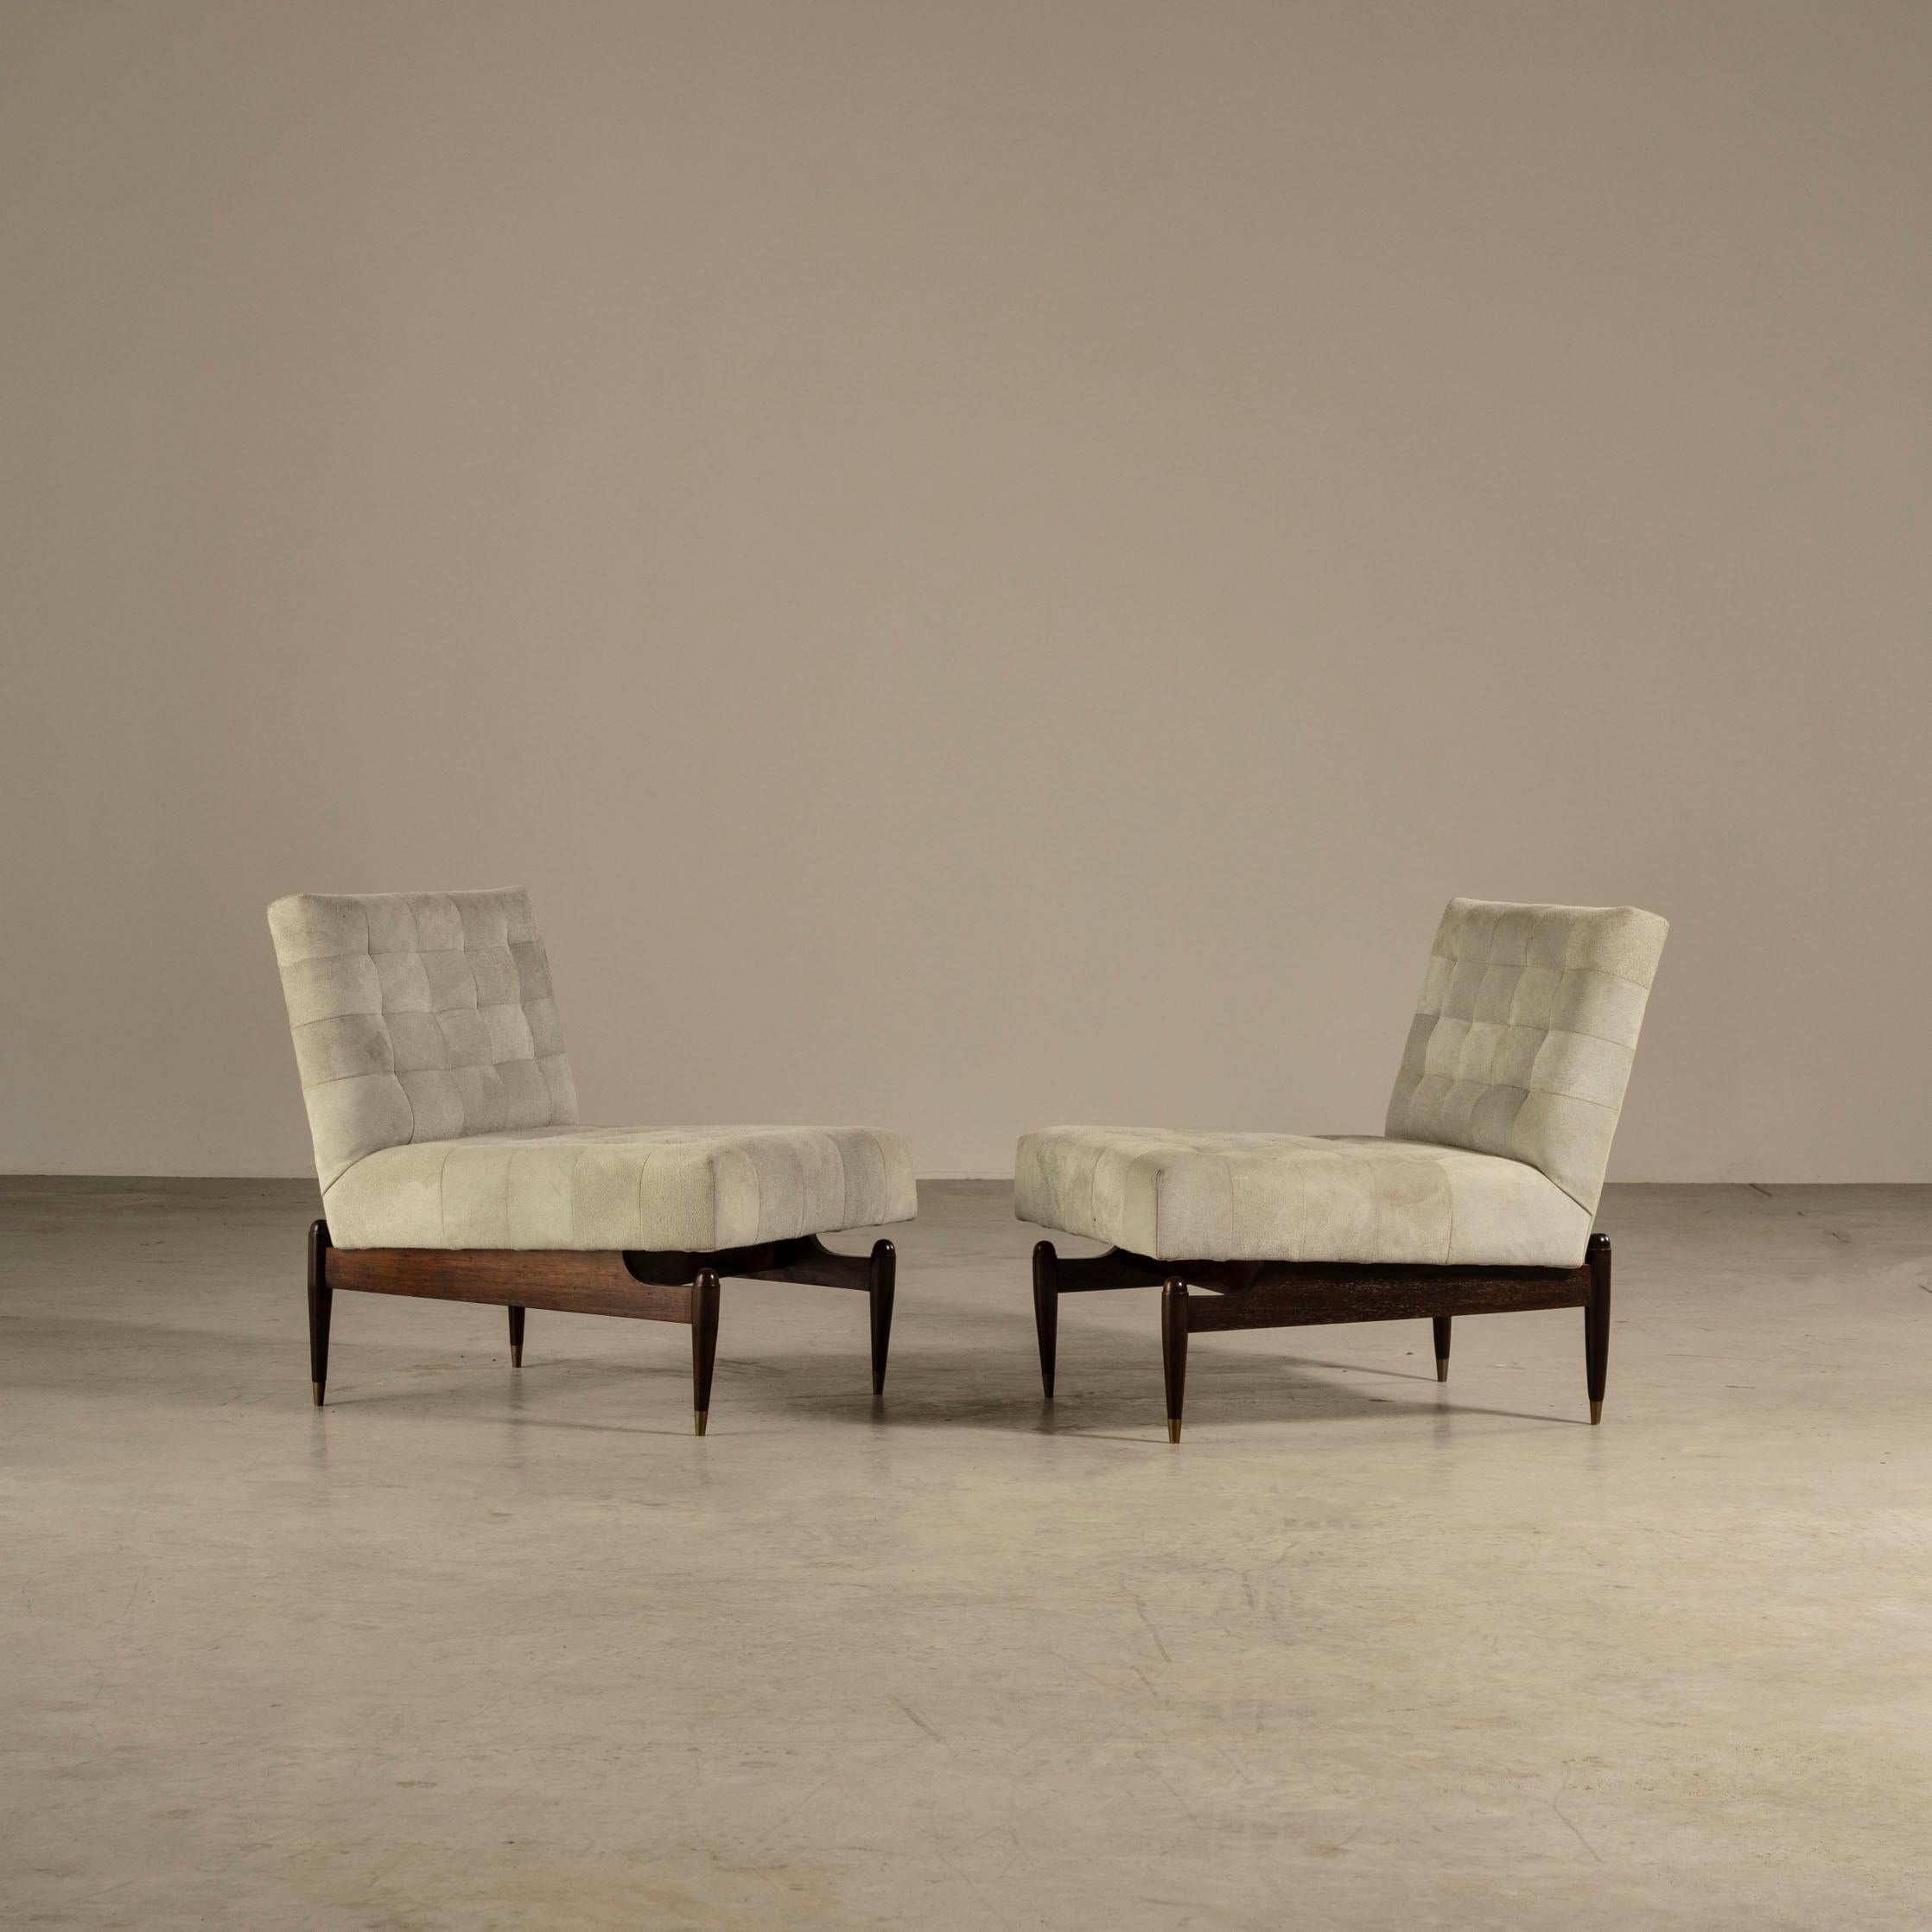 Diese beiden Loungesessel sind eine atemberaubende Darstellung des brasilianischen Designs der Jahrhundertmitte, das von dem angesehenen Designkollektiv Liceu de Artes e Ofícios entworfen wurde. Die Gestelle der Stühle sind aus exquisitem